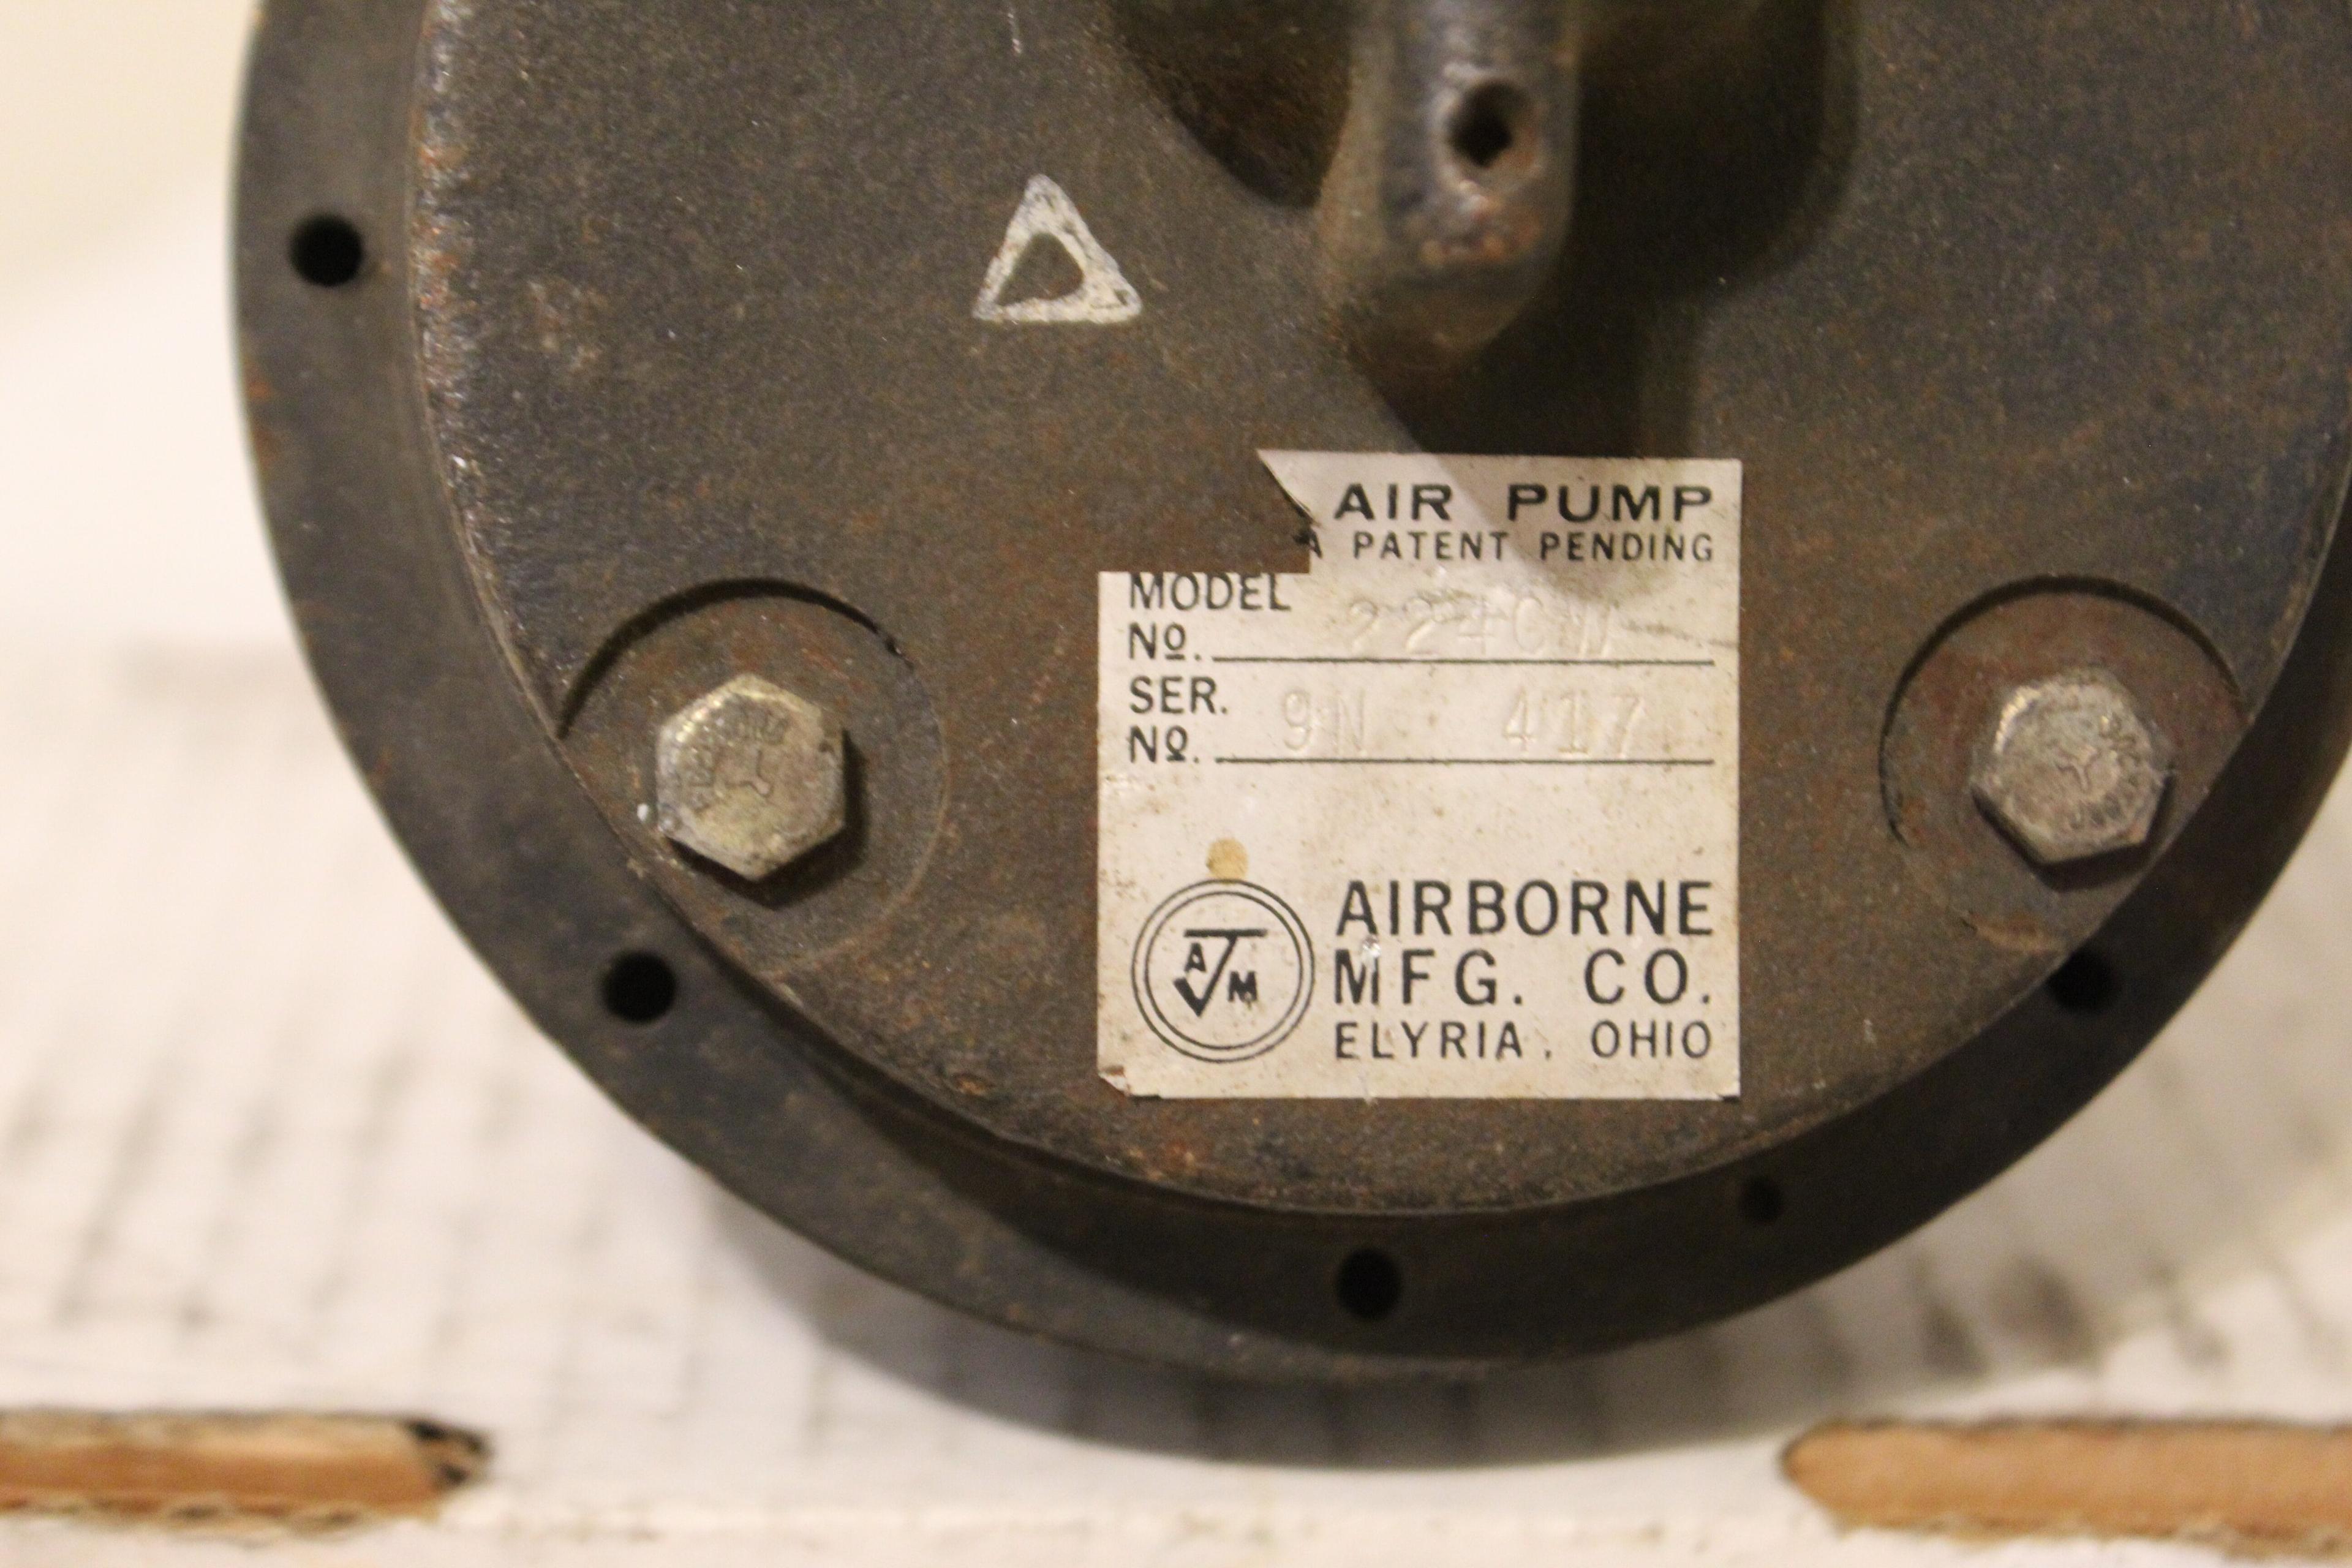 Airborne Air Pump Model 224cw